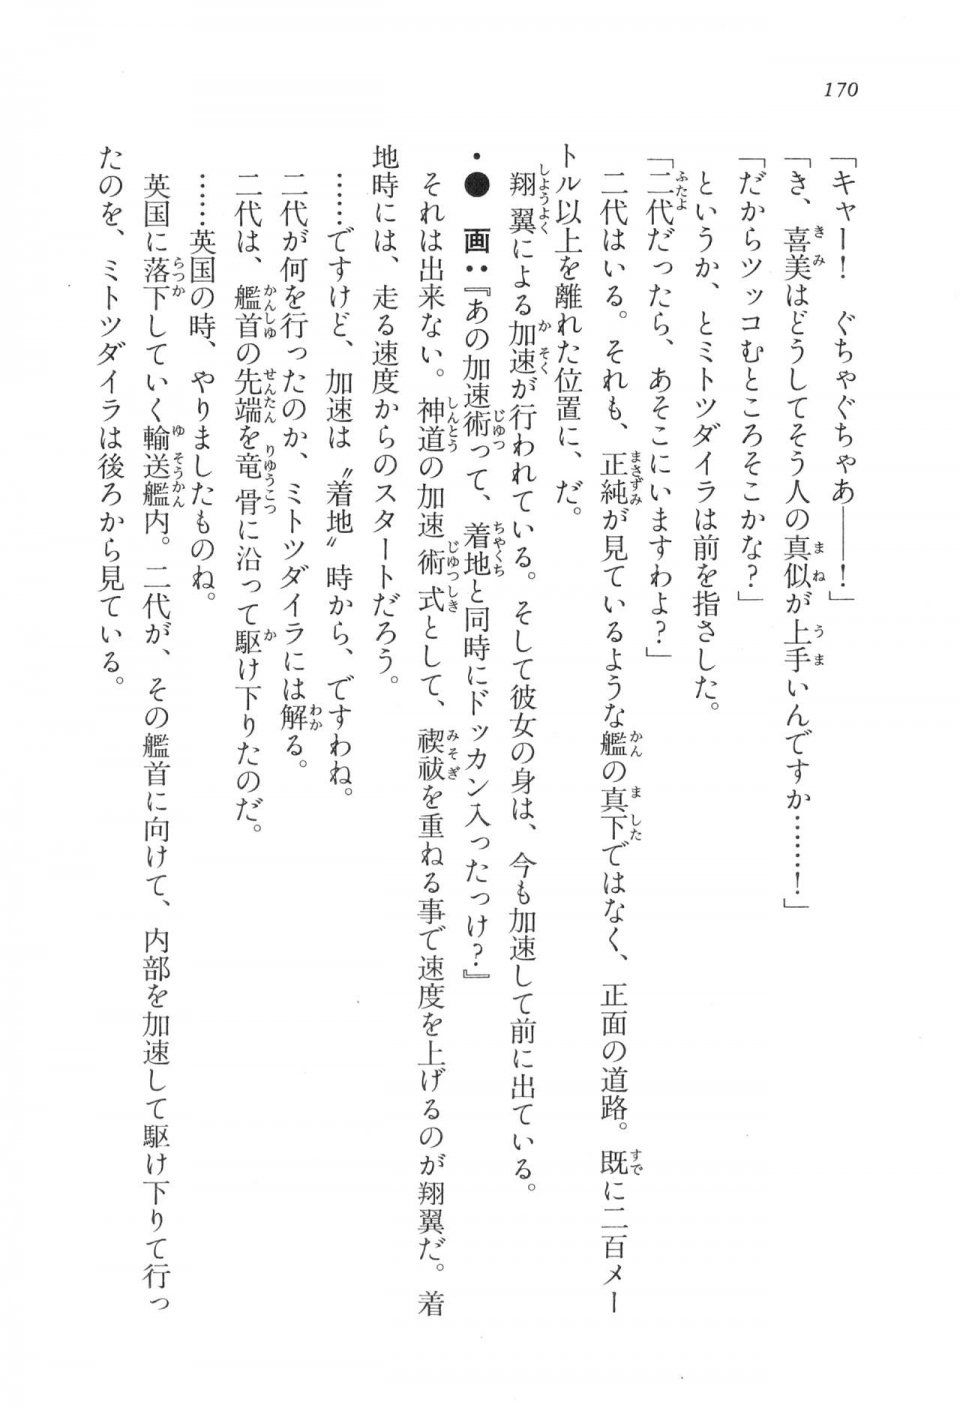 Kyoukai Senjou no Horizon LN Vol 17(7B) - Photo #170